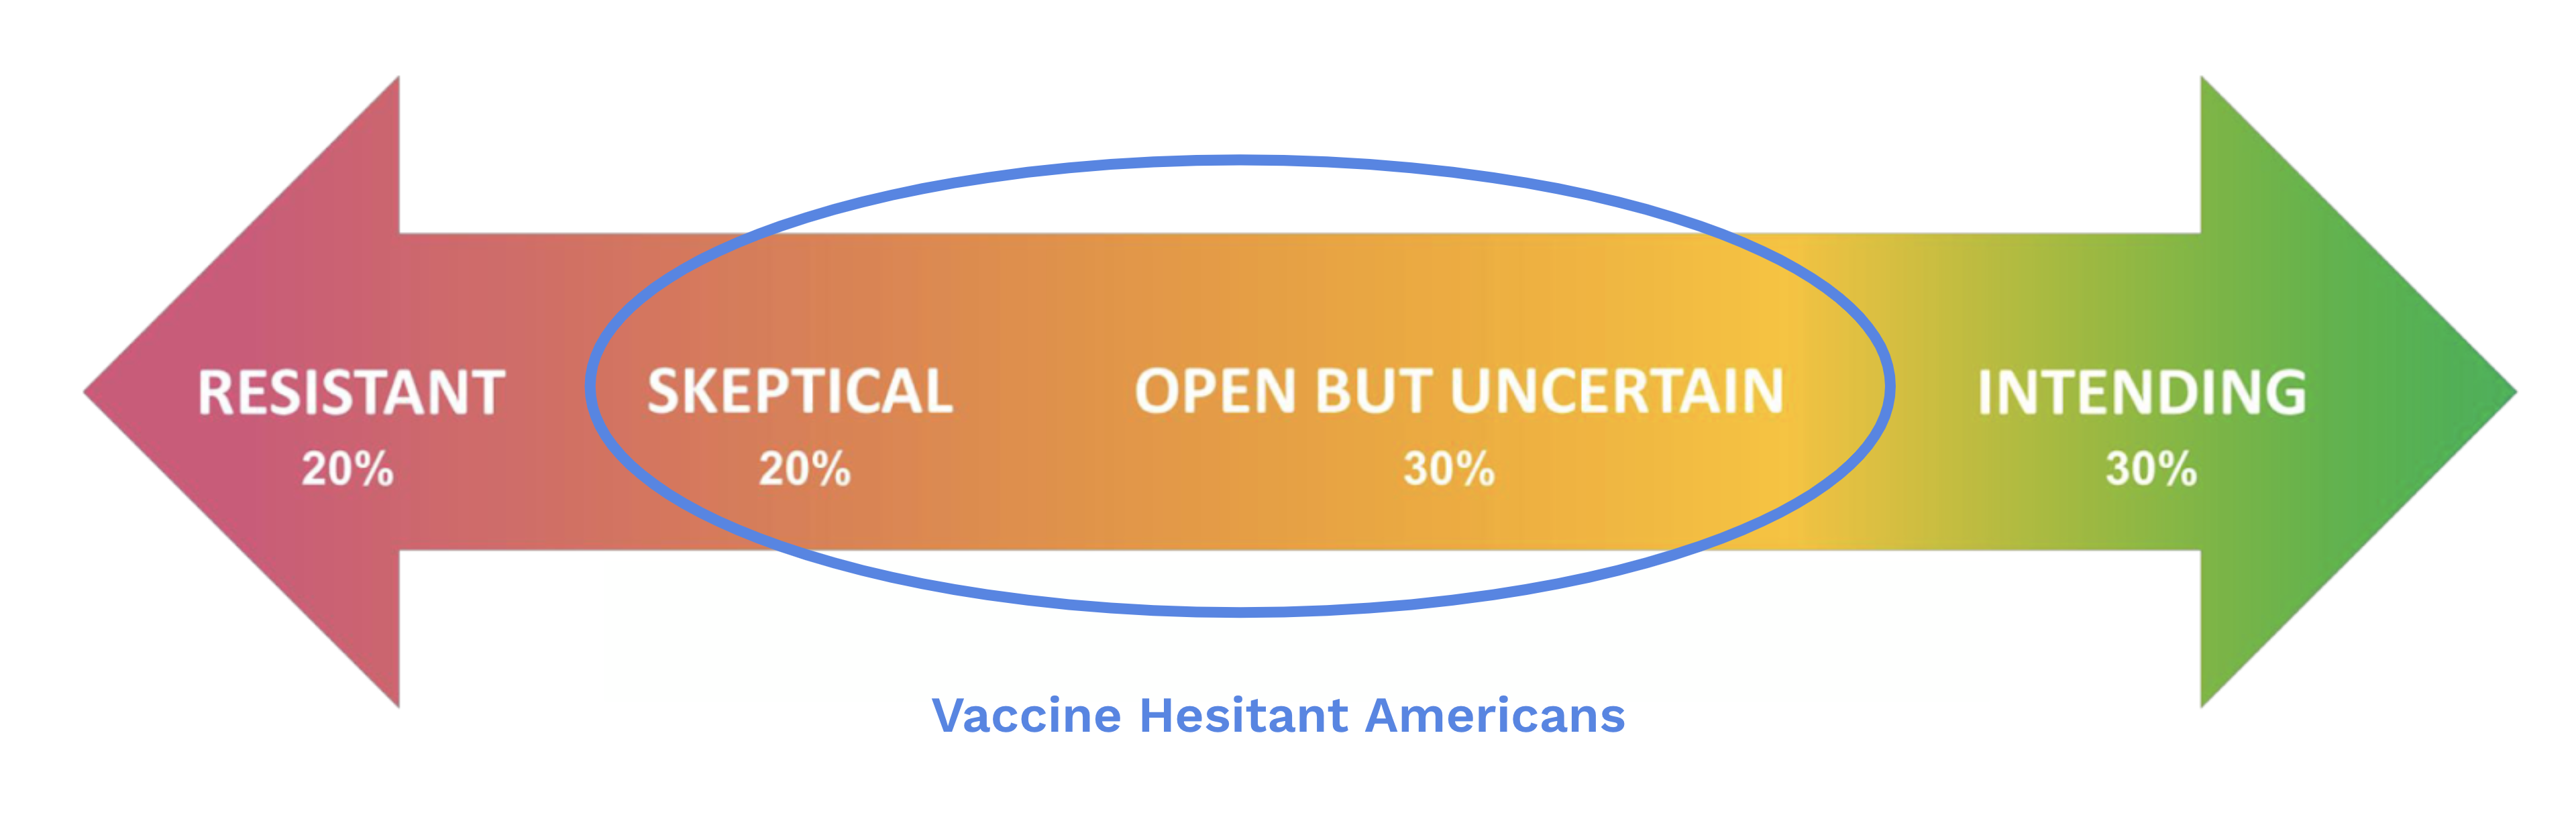 Vaccine Hesitant Americans